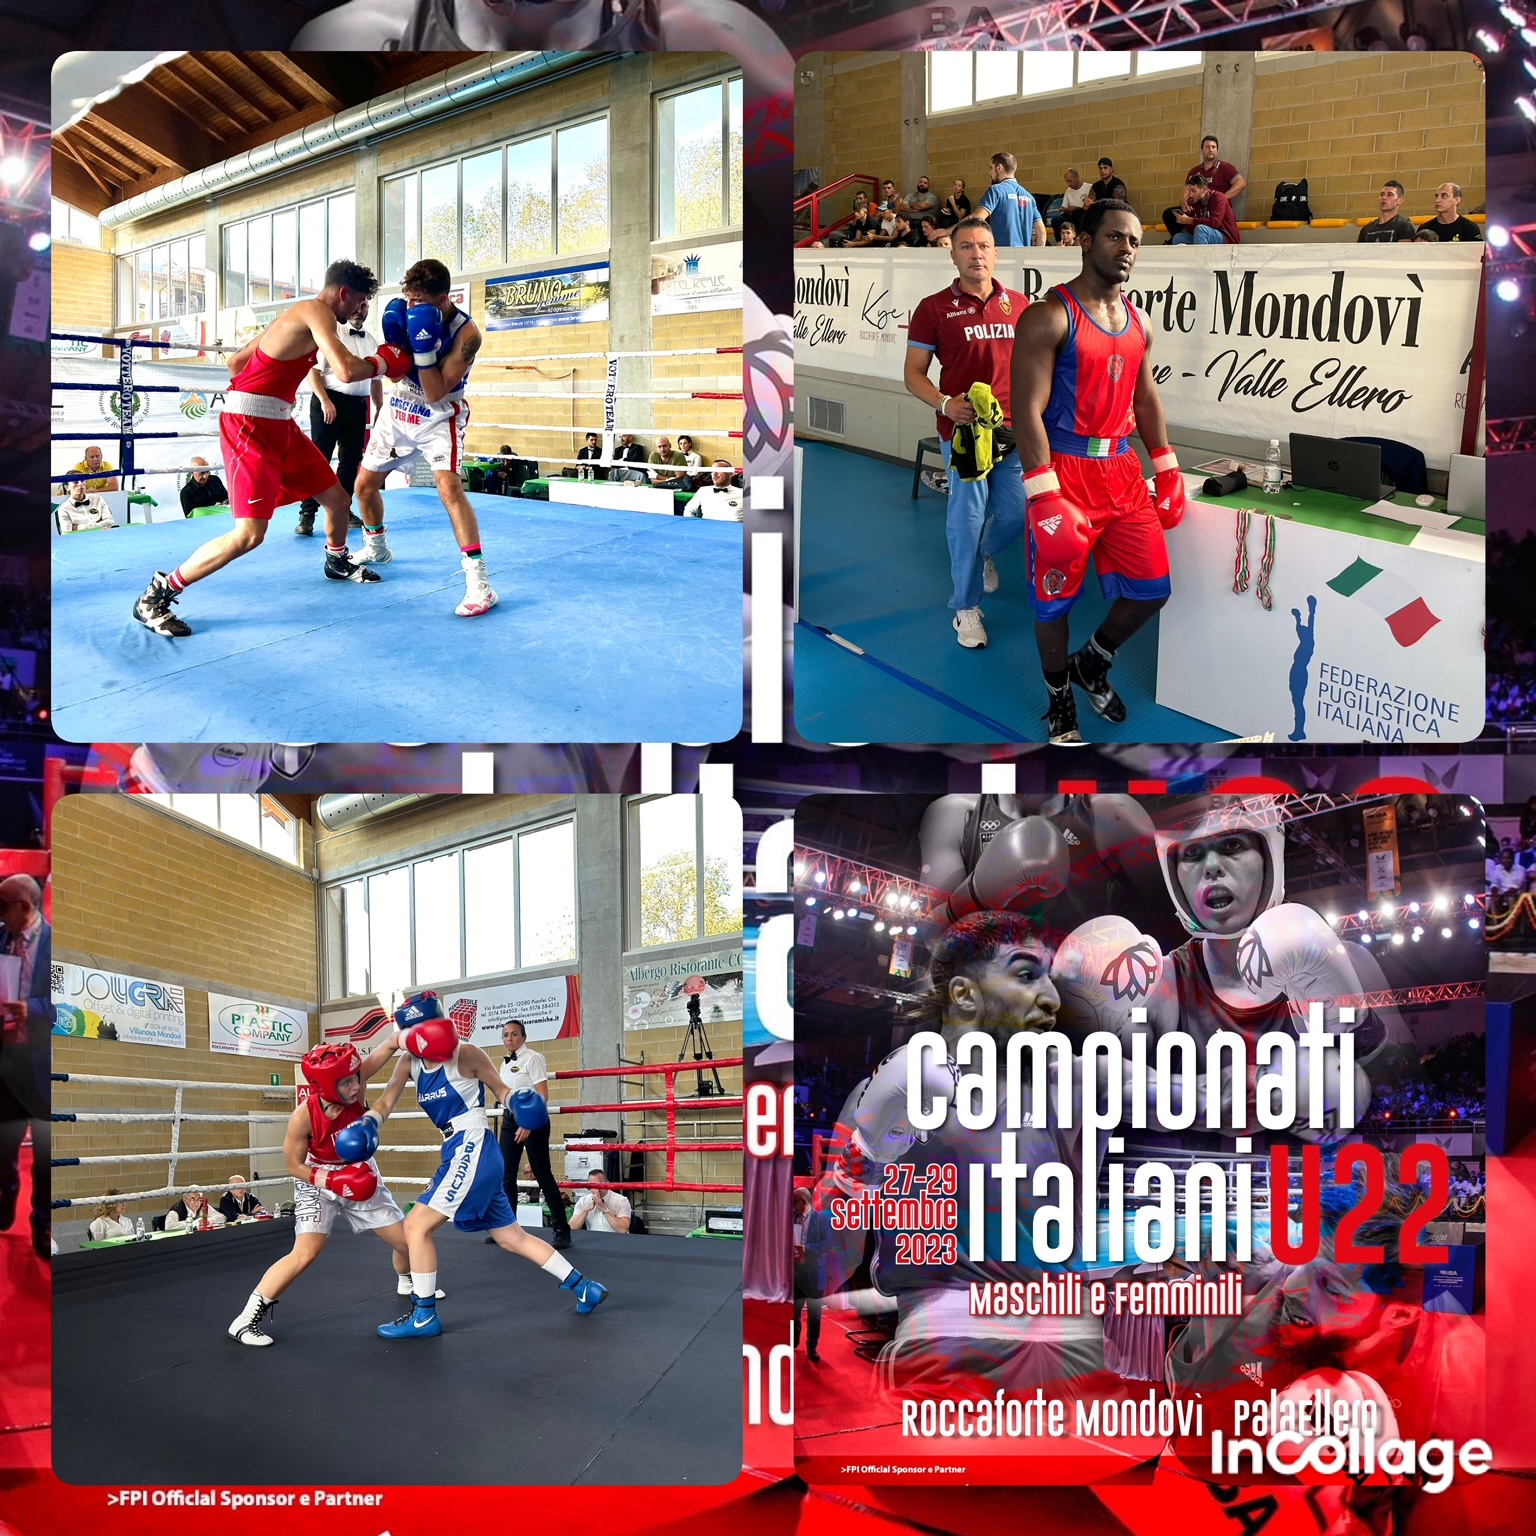 Campionati Italiani M/F Under 22 2023 -  Roccaforte Mondovì - RISULTATI SEMIFINALI + PROGRAMMA FINALISSIME